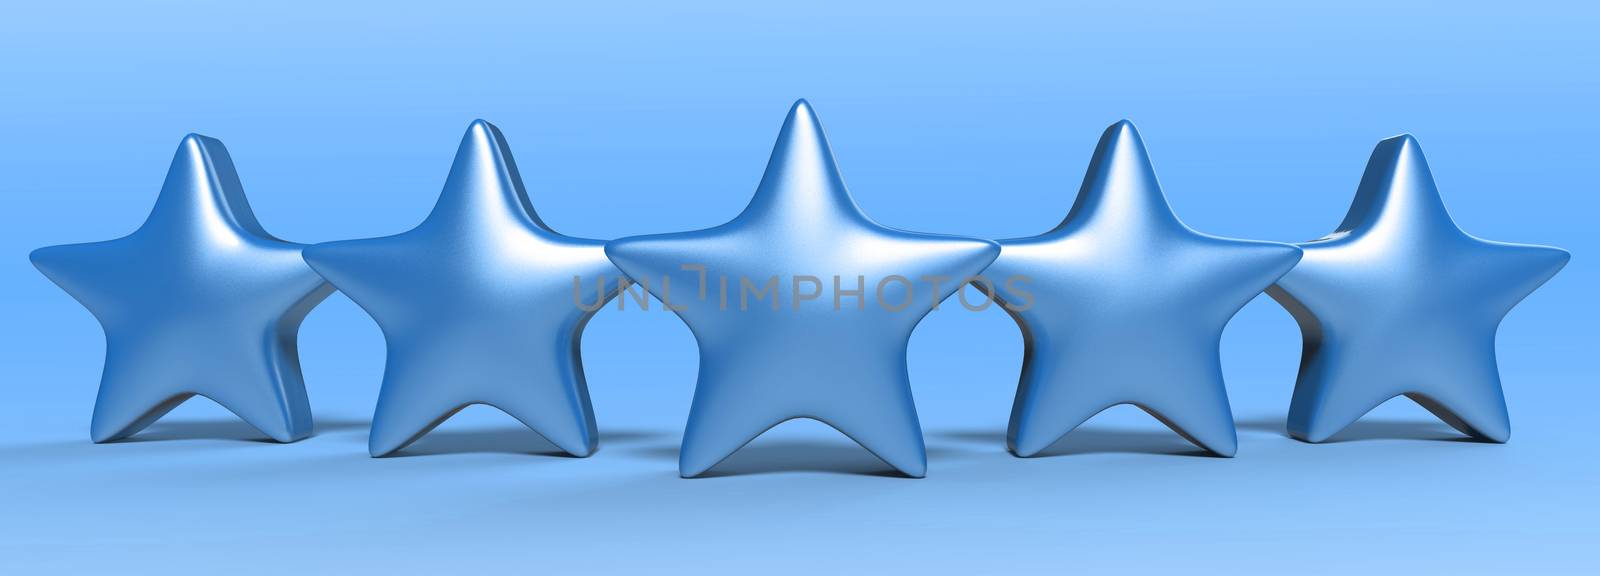 3d five blue star on color background. Render and illustration of golden star for premium